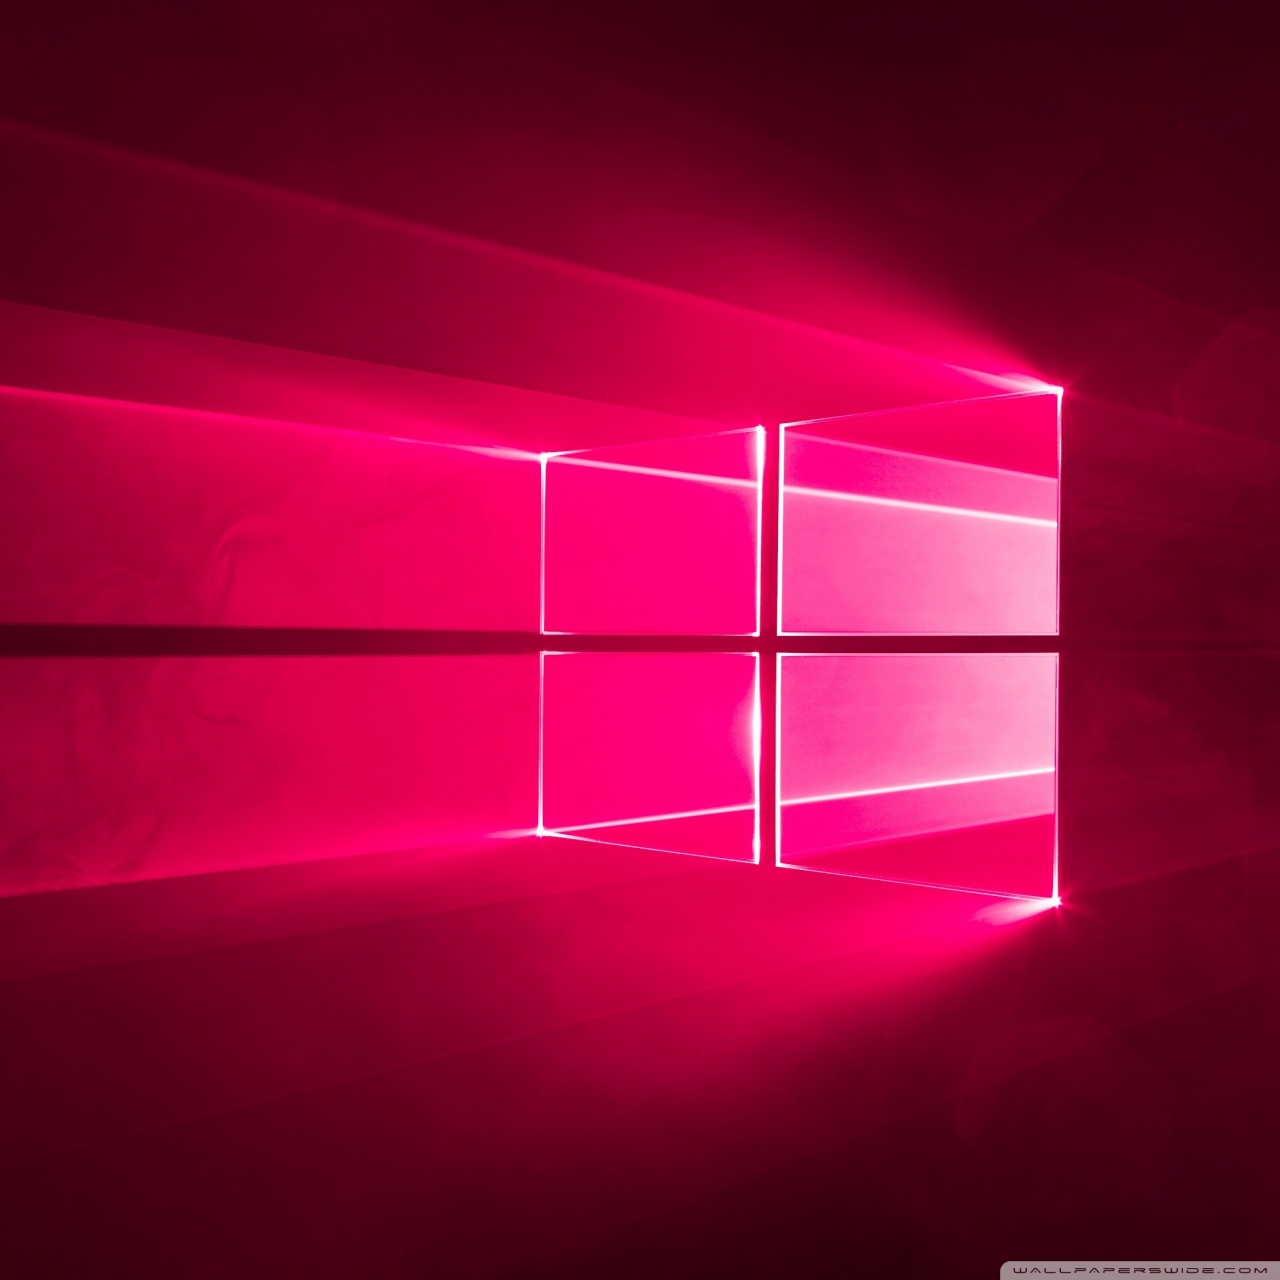 Windows 10 Theme Hd - HD Wallpaper 